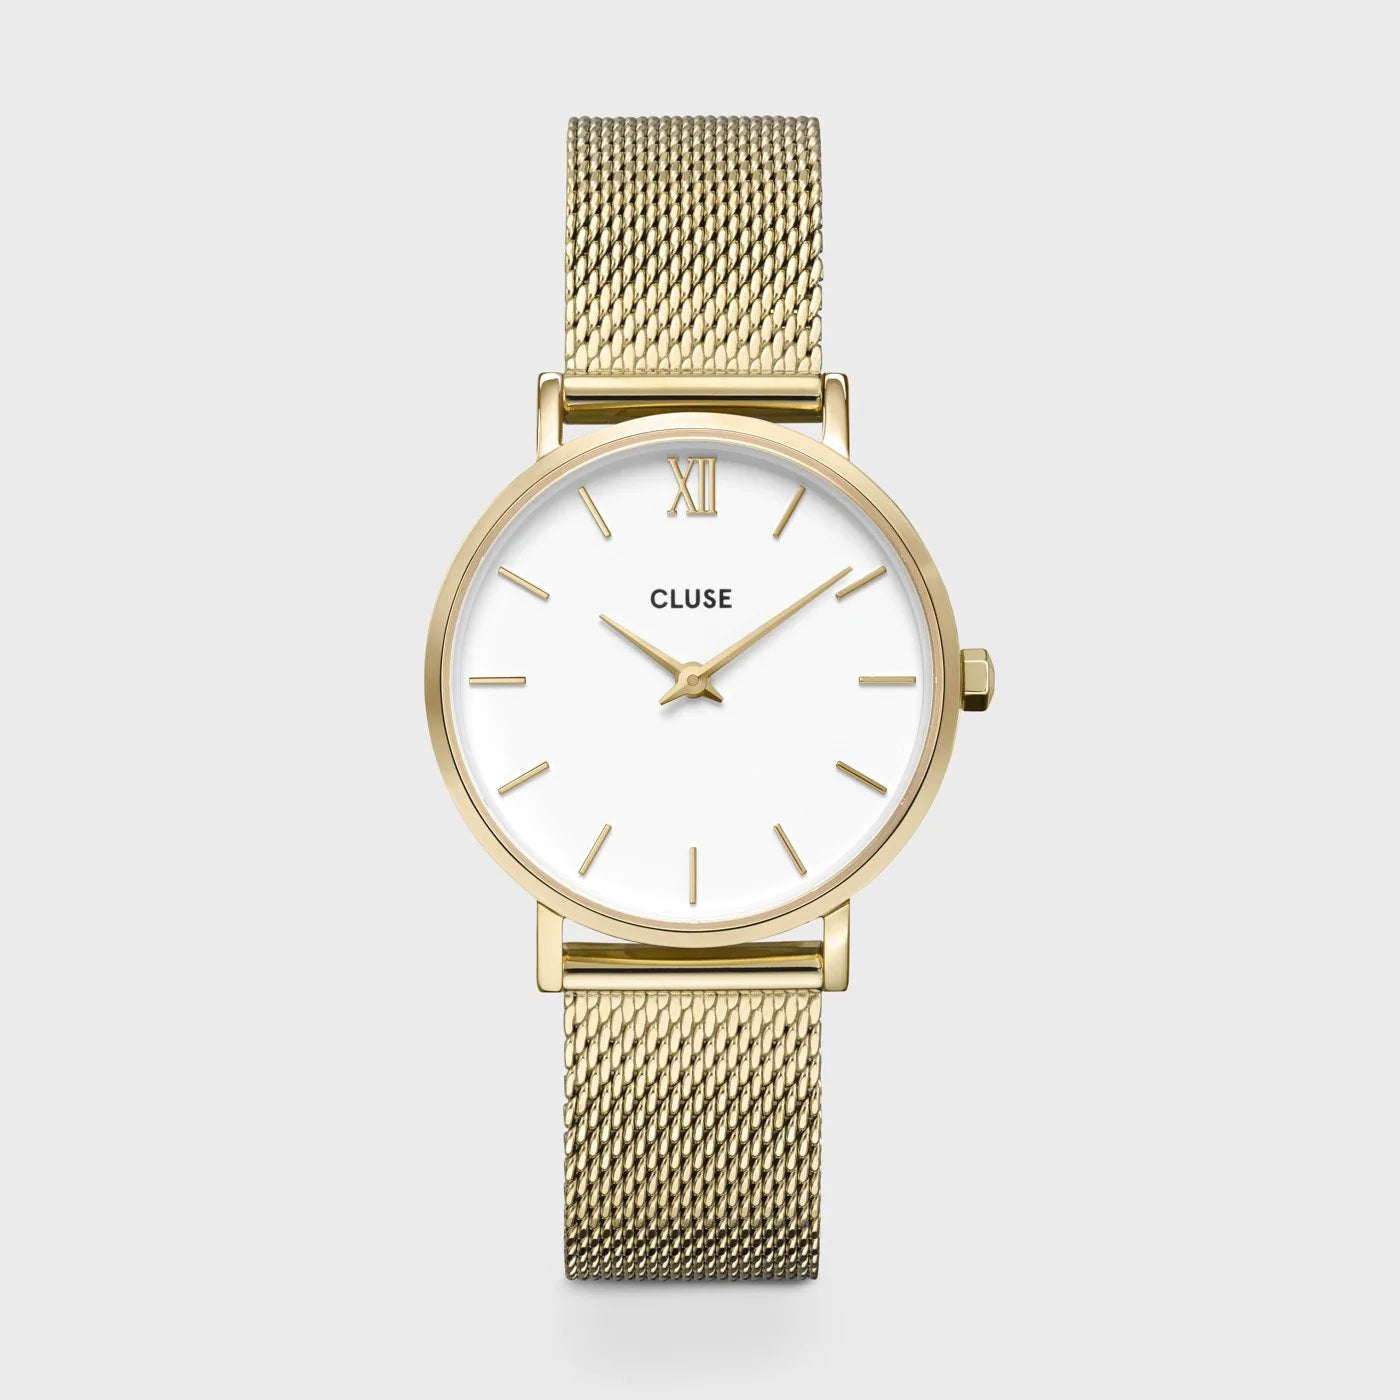 Frontale Ansicht der Cluse Stahl-Uhr "Minuit Mesh" mit goldfarbenem Gehäuse und weißem Zifferblatt